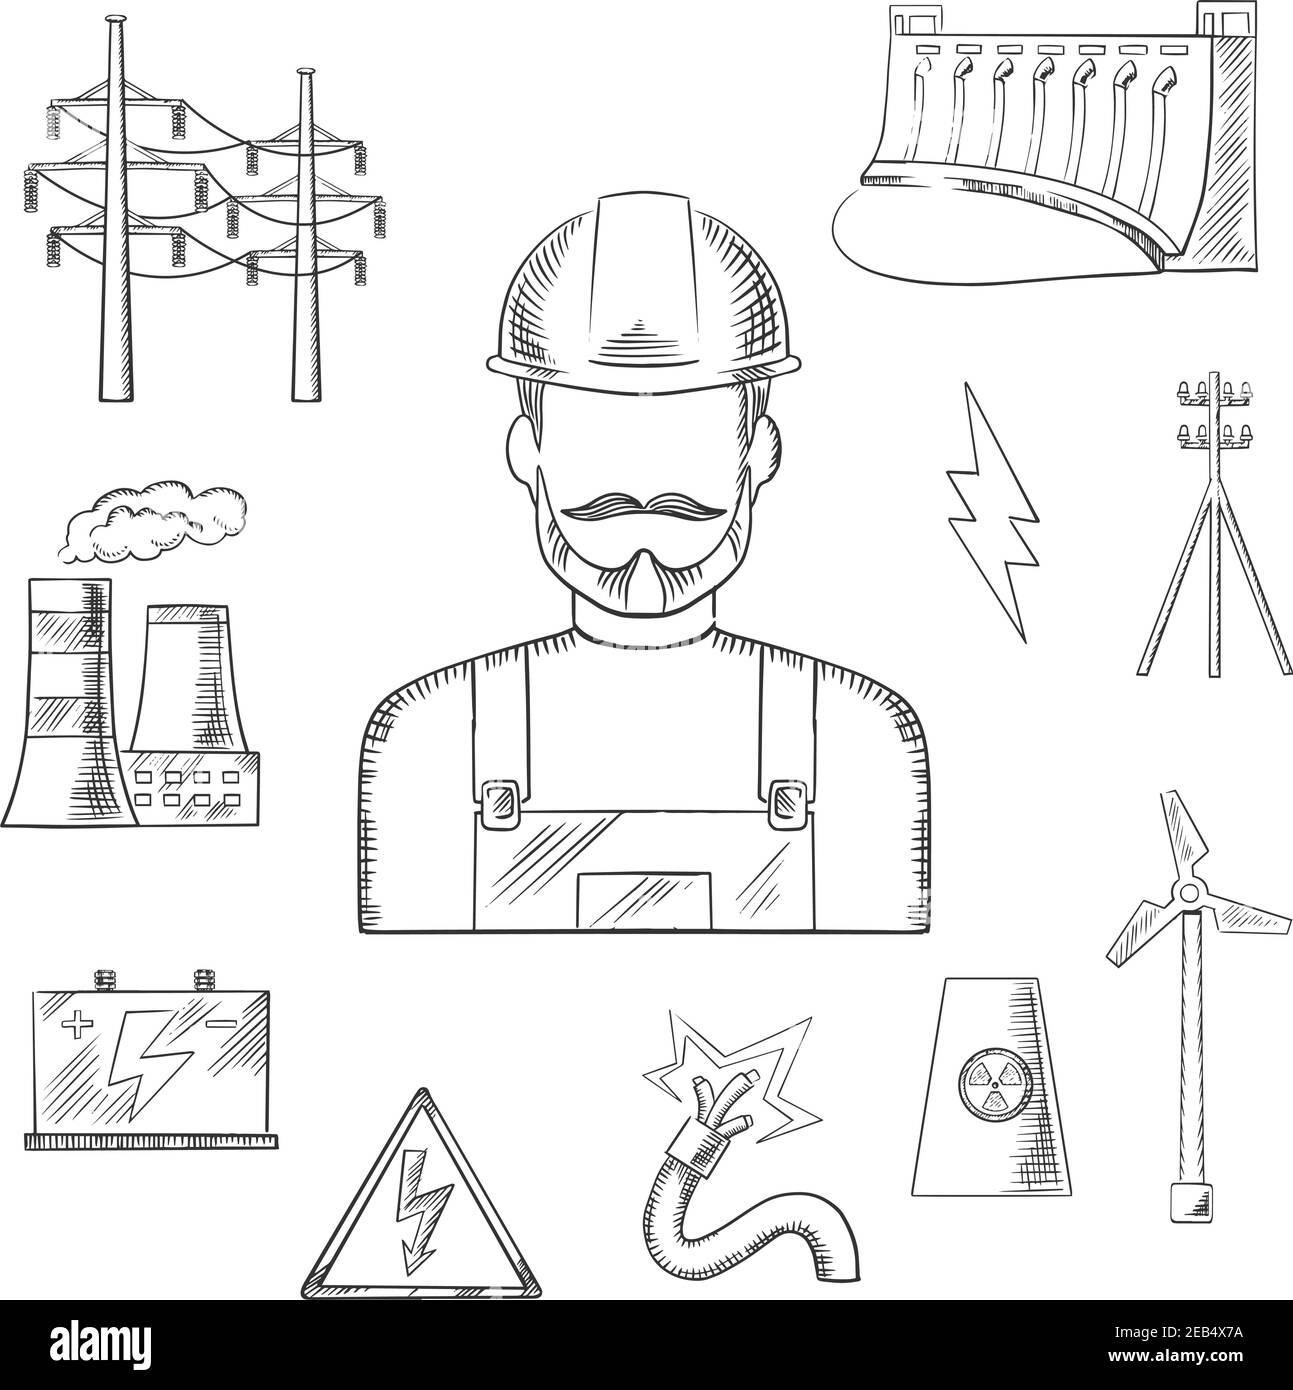 Ikonen der Elektrizitäts- und Energiewirtschaft Skizzen mit Wärmekraftwerken, Wasserkraft- und Windenergie, Kernkraftwerken, Stromleitungen und Pylon, Batte Stock Vektor